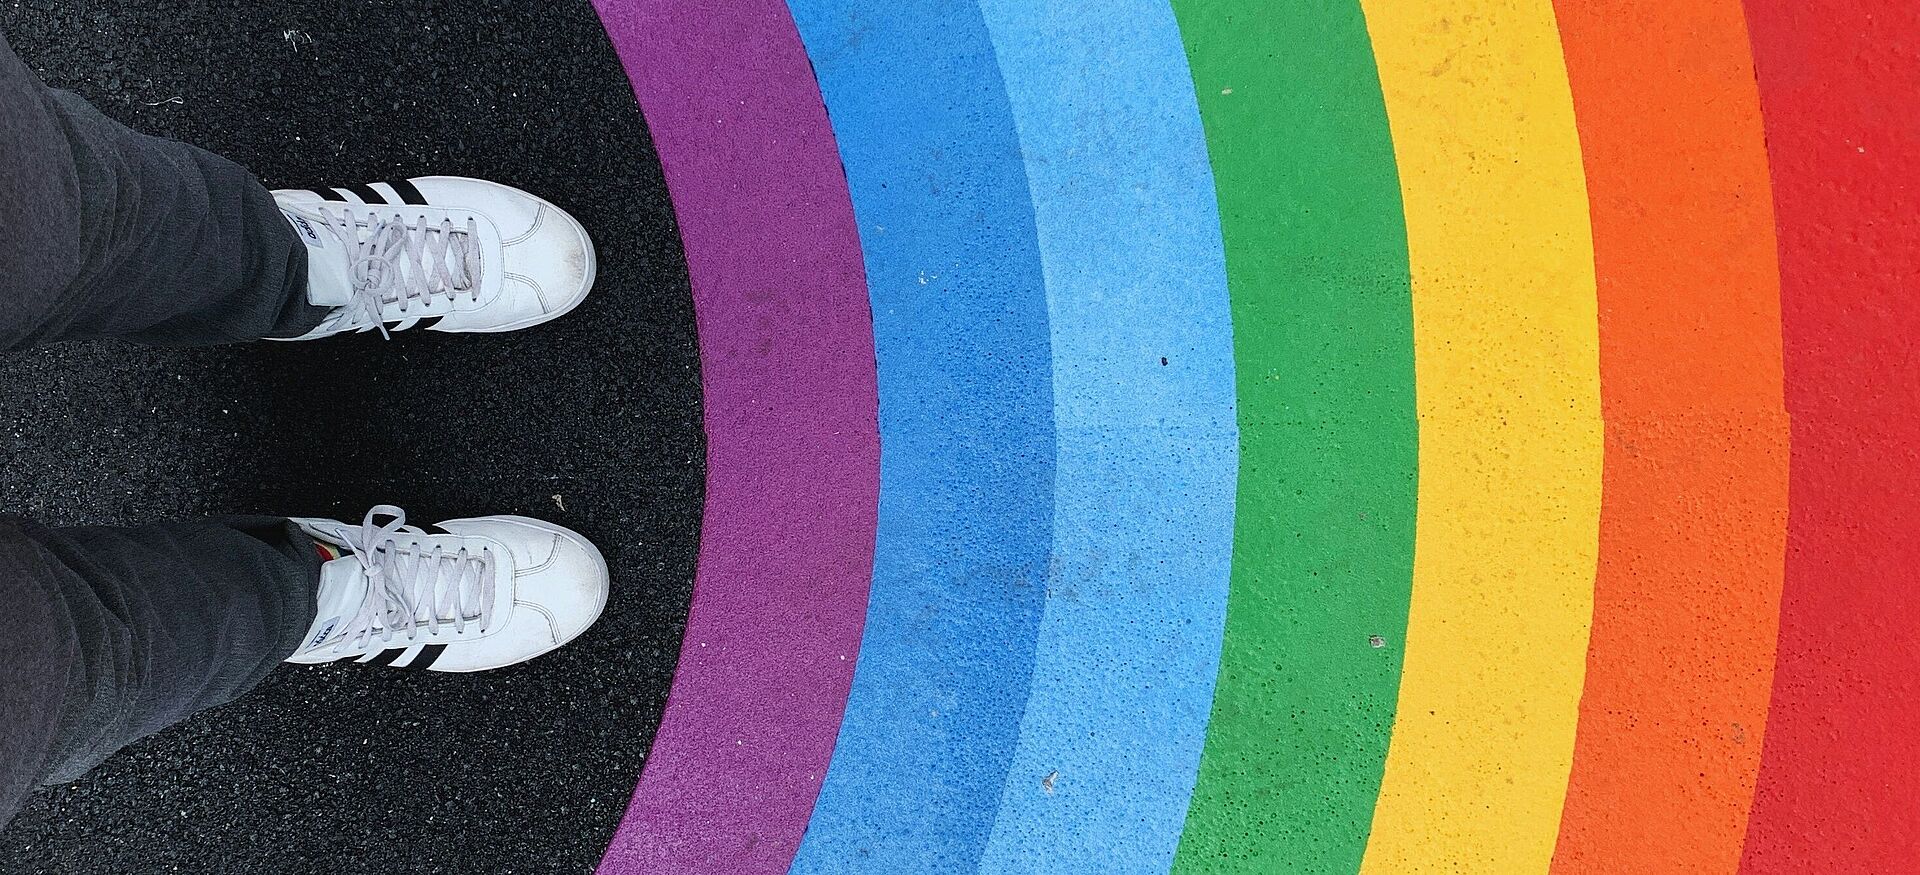 Füße einer Person vor einem auf den Boden gemalten Regenbogen